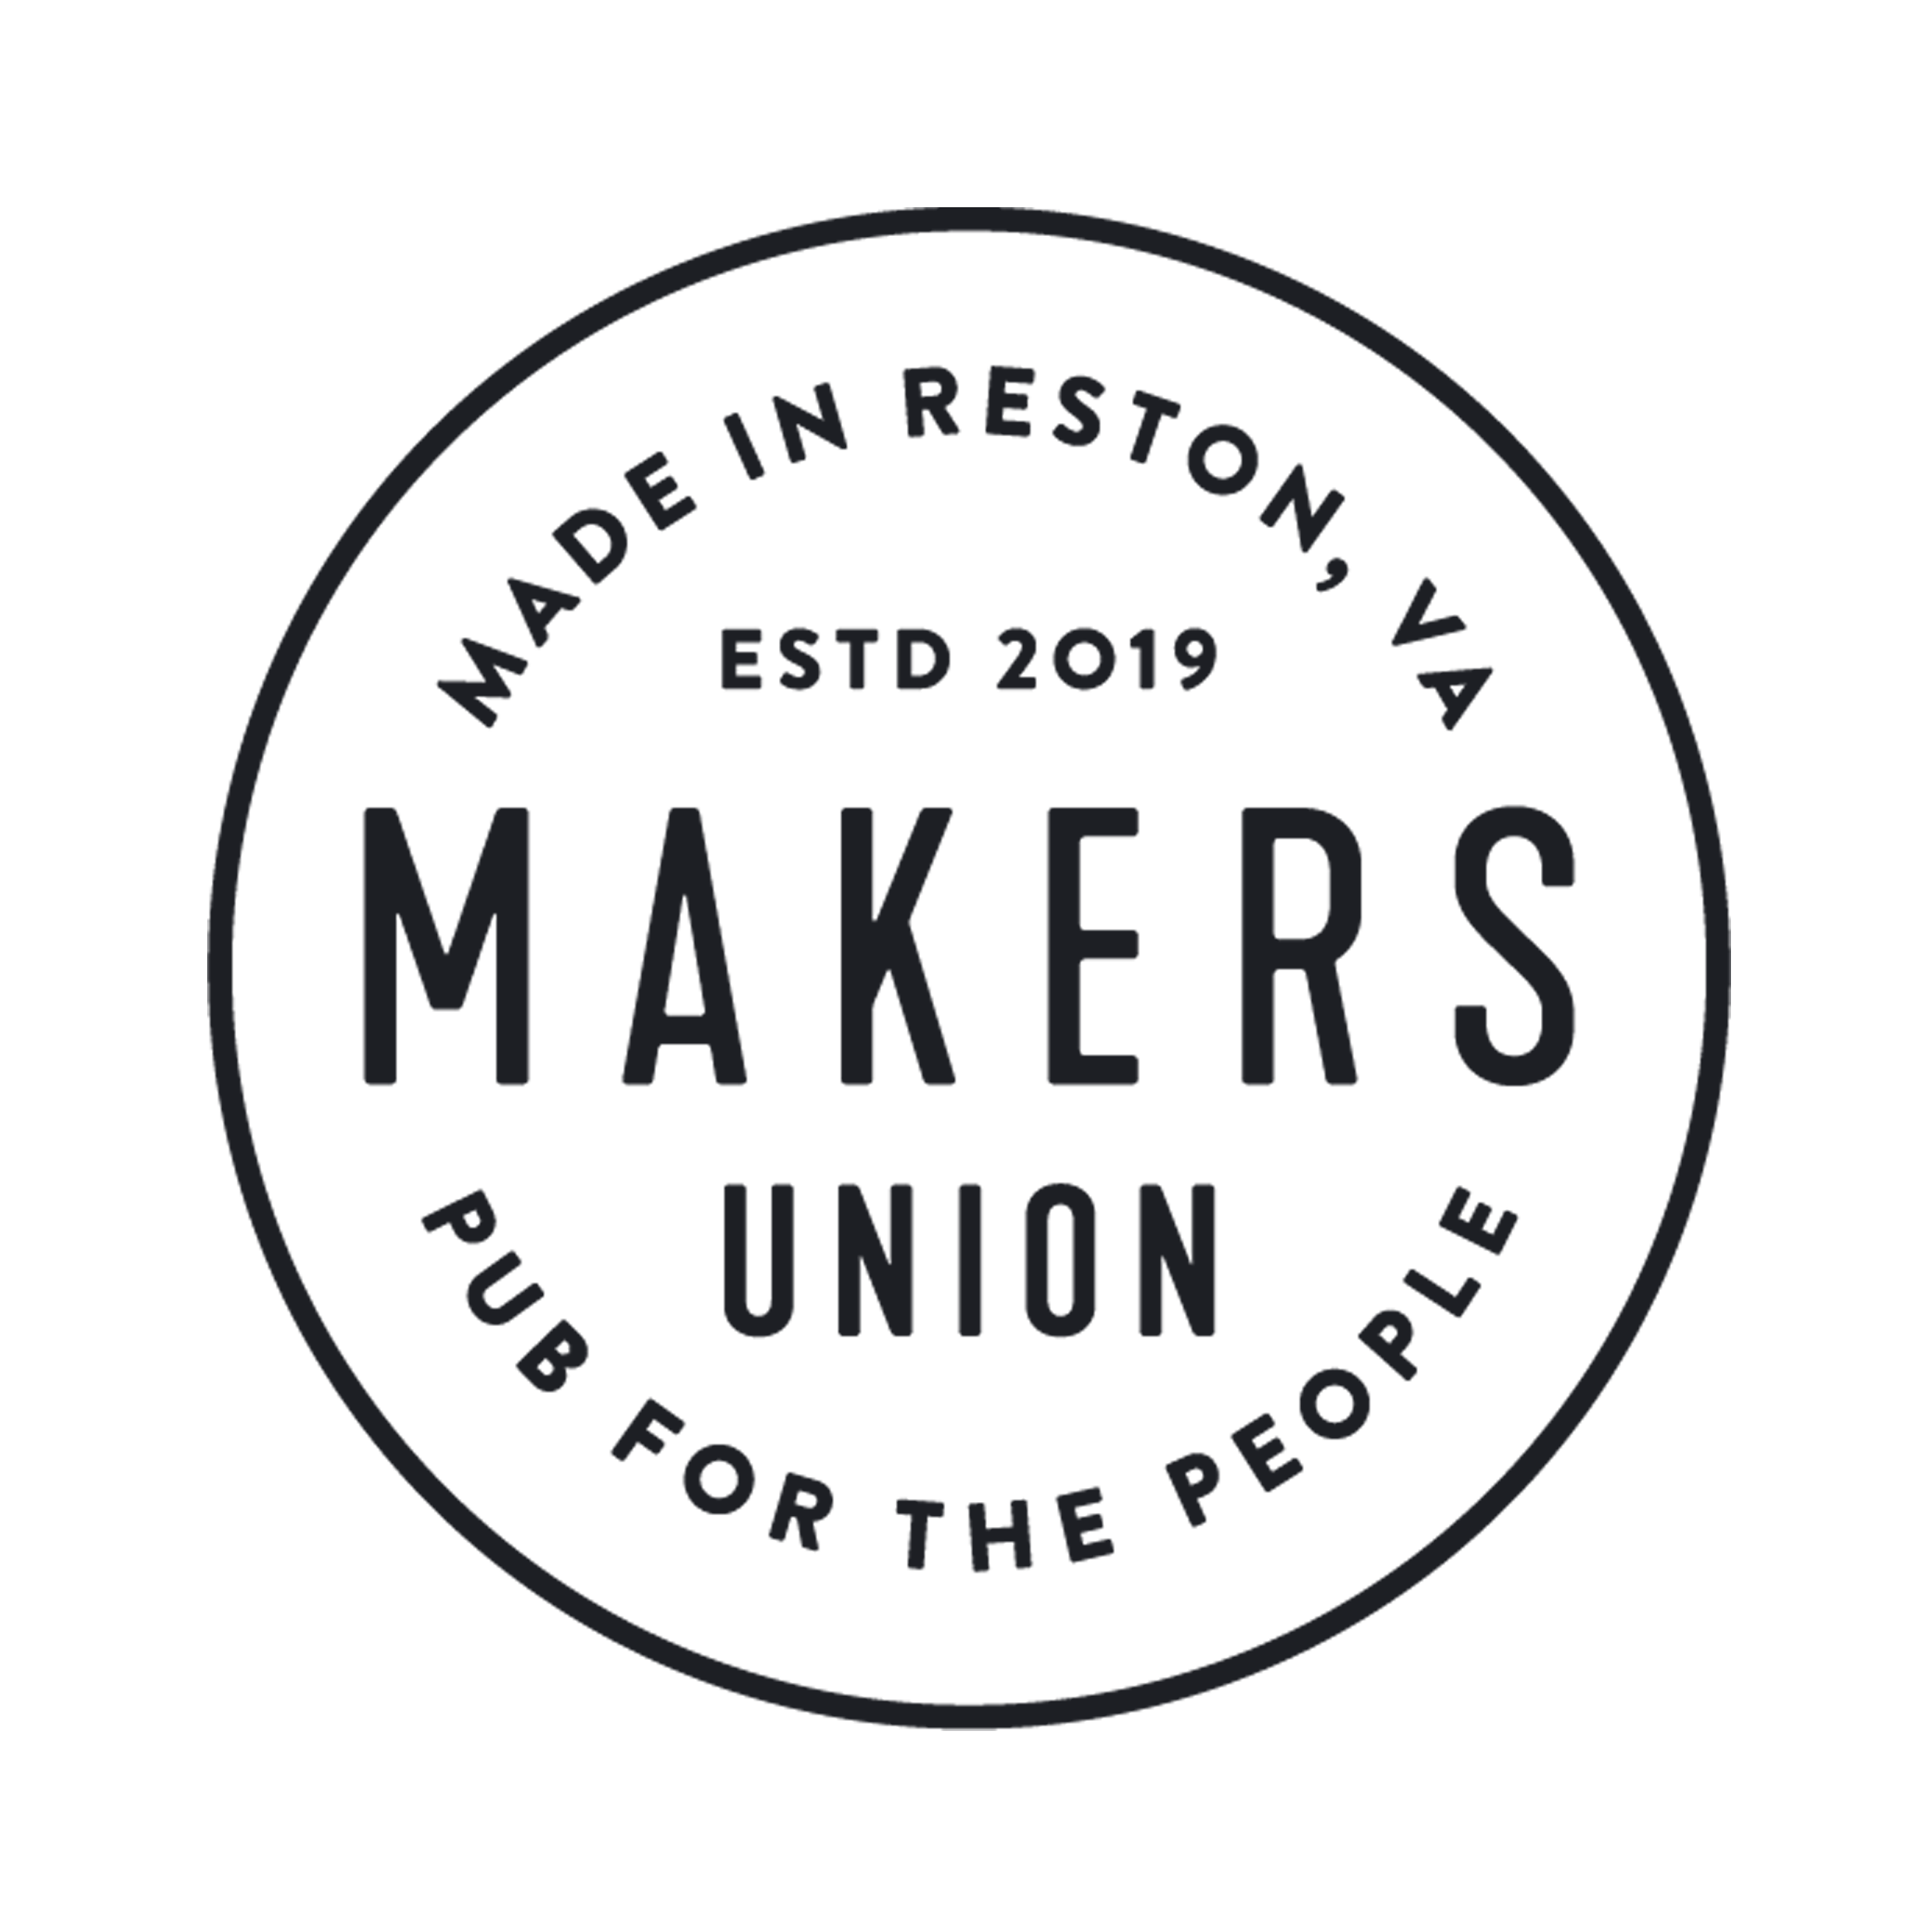 Makers Union Pub (Copy)